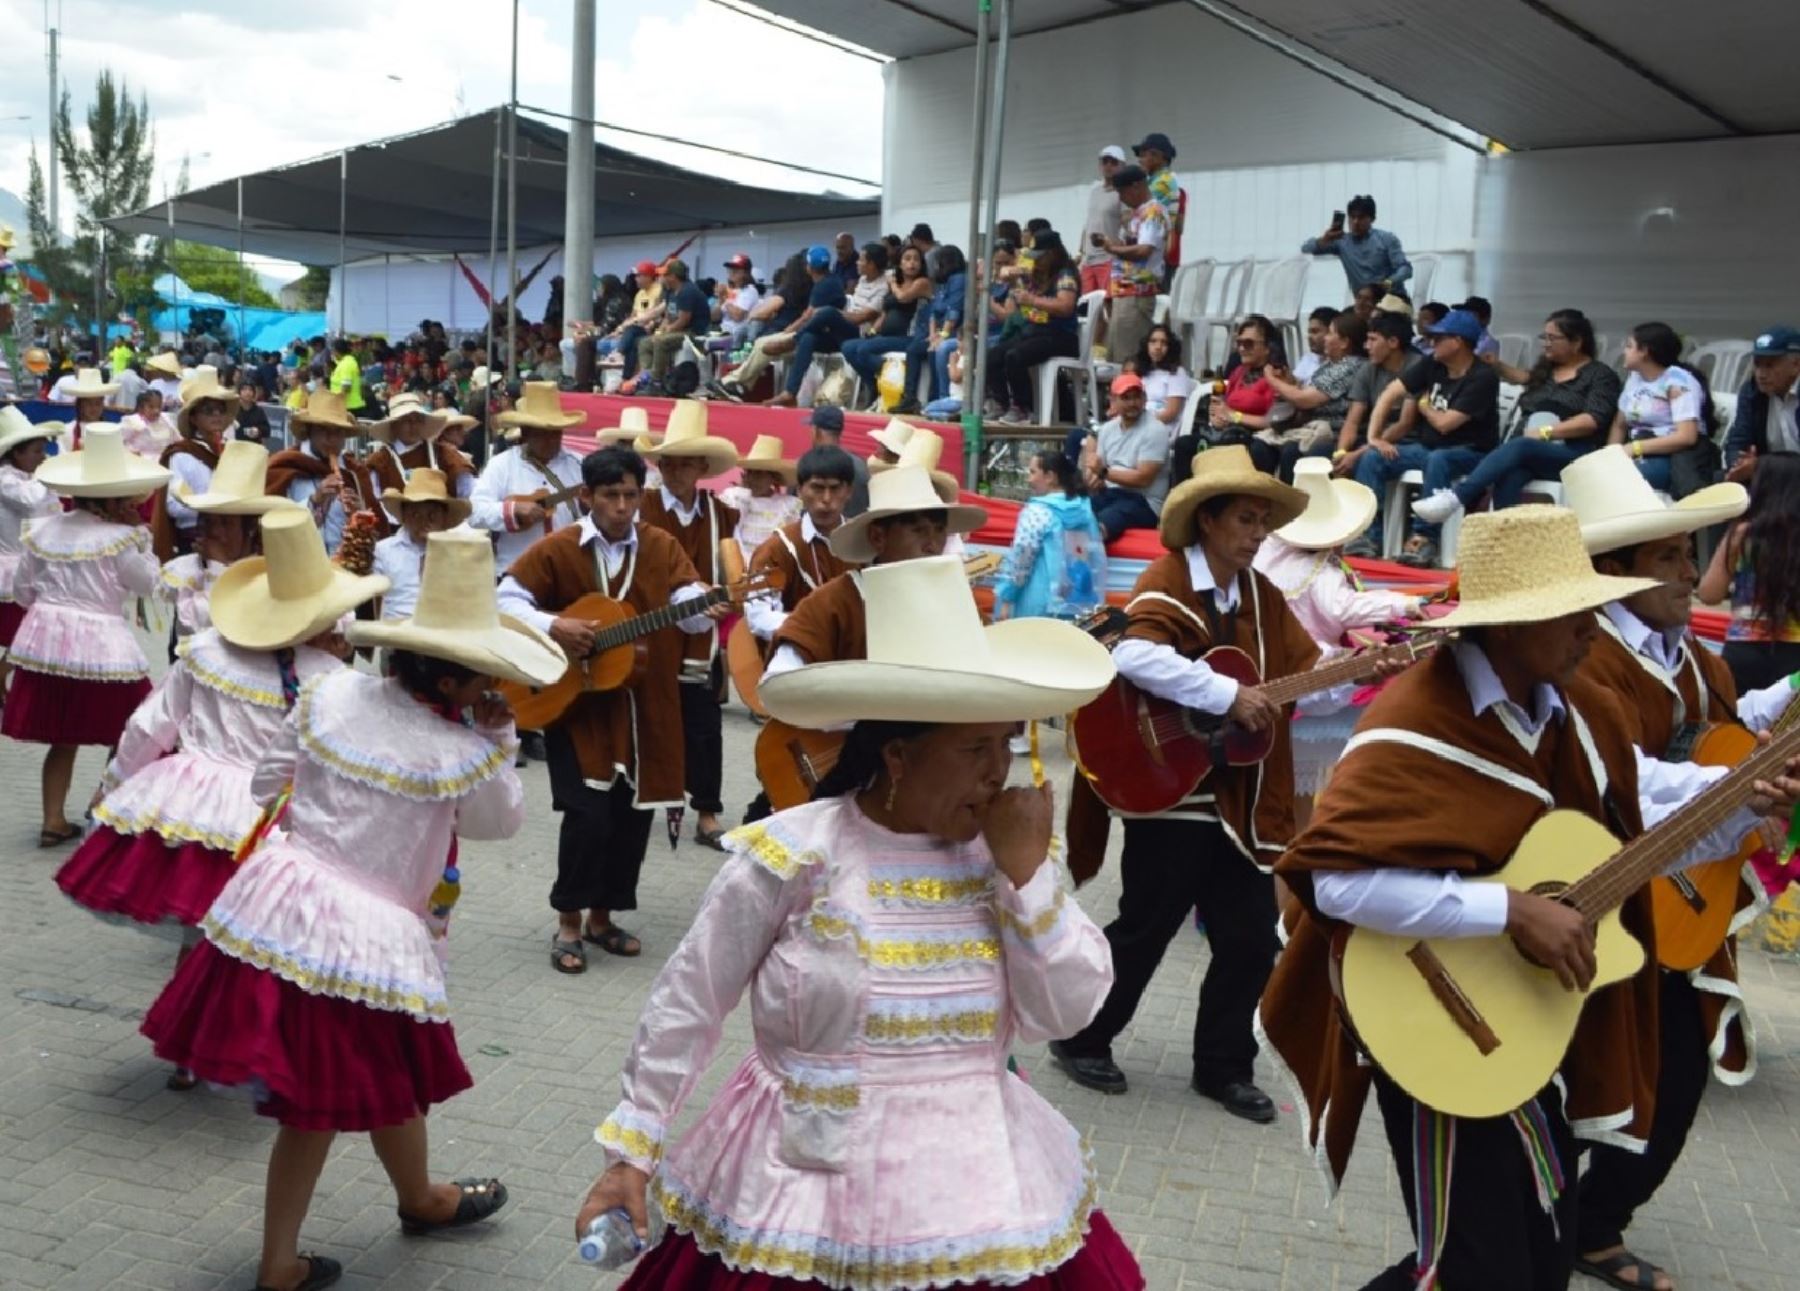 El colorido corso del tradicional carnaval de Cajamarca fue disfrutado por miles de pobladores y turistas que acompañaron a las delegaciones participantes. Foto: Eduard Lozano.